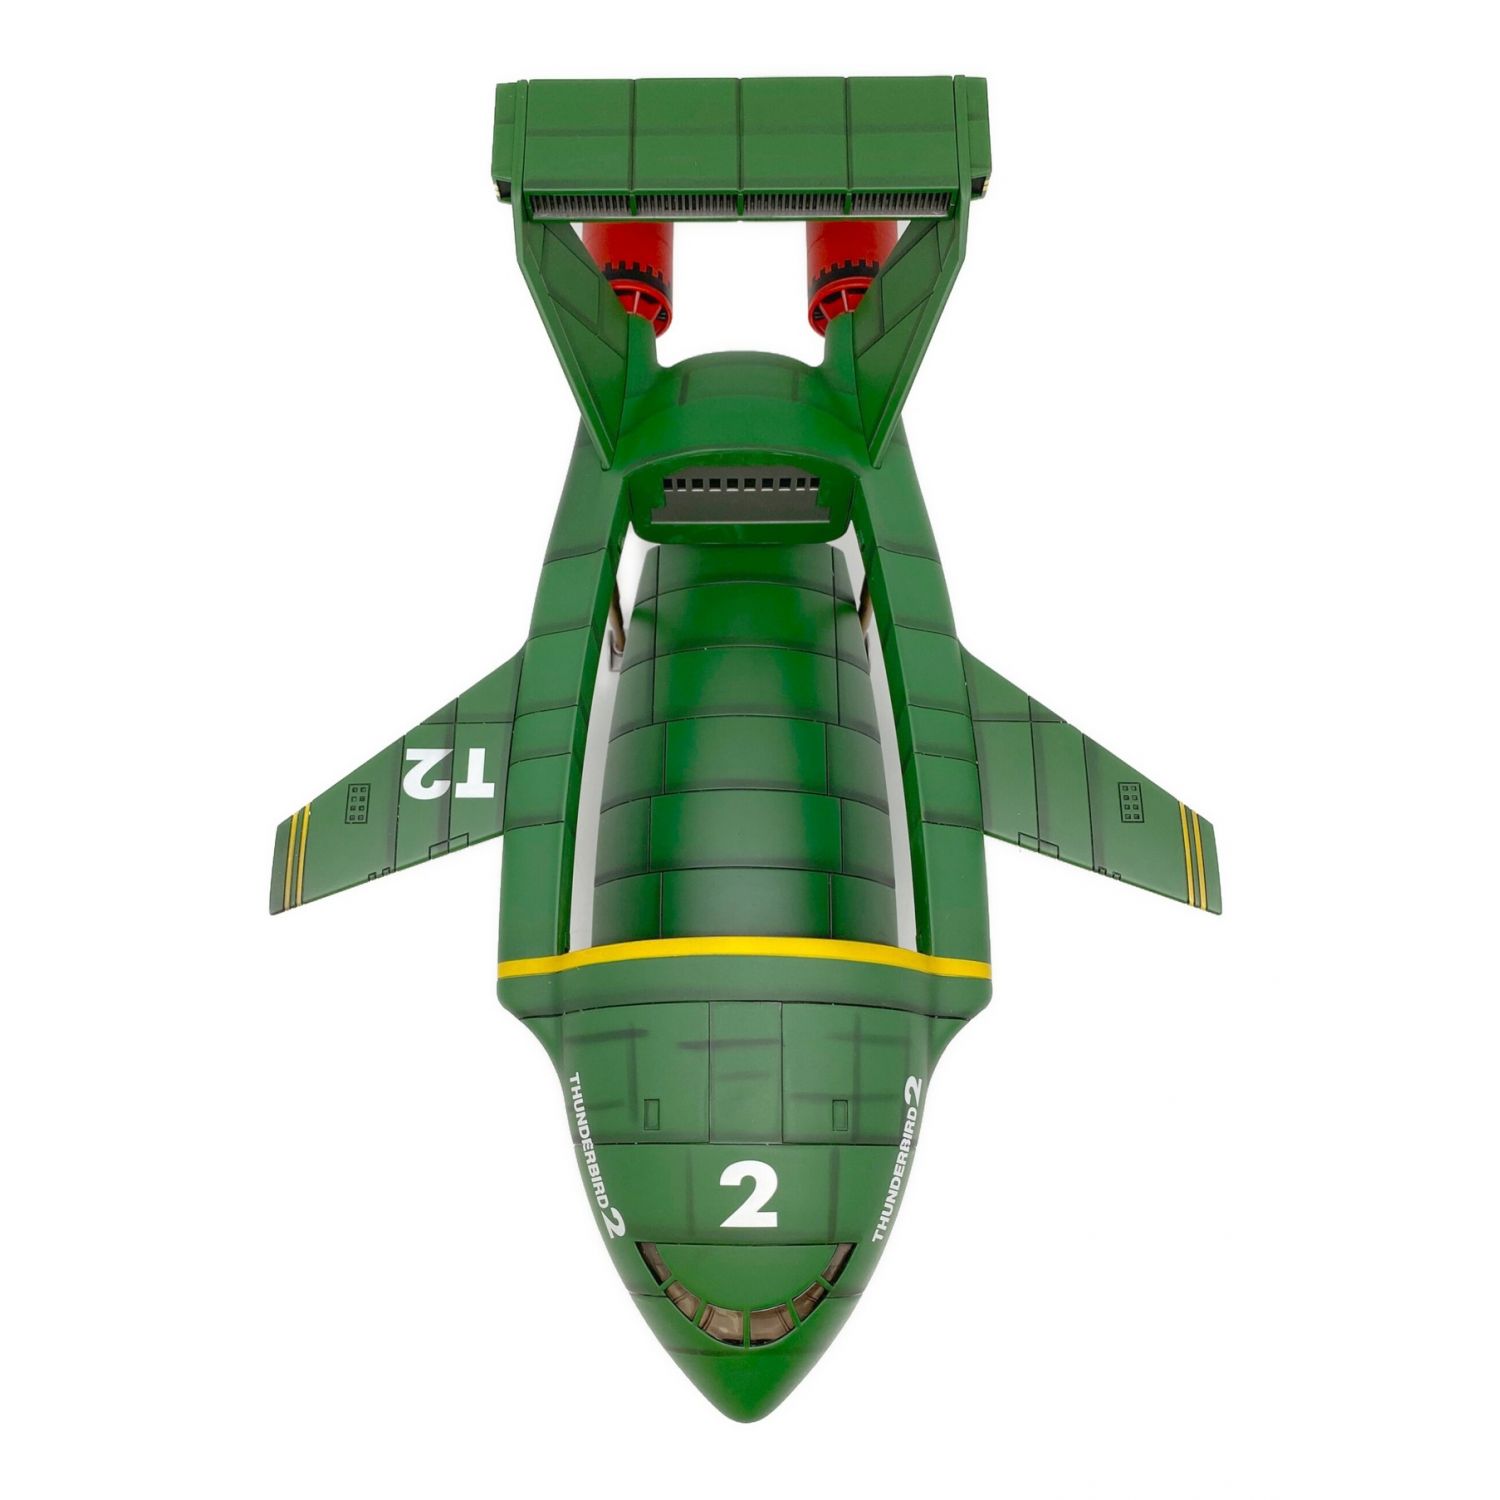 アオシマ 模型おもちゃ TB2 新世紀合金サンダーバード2号DX 